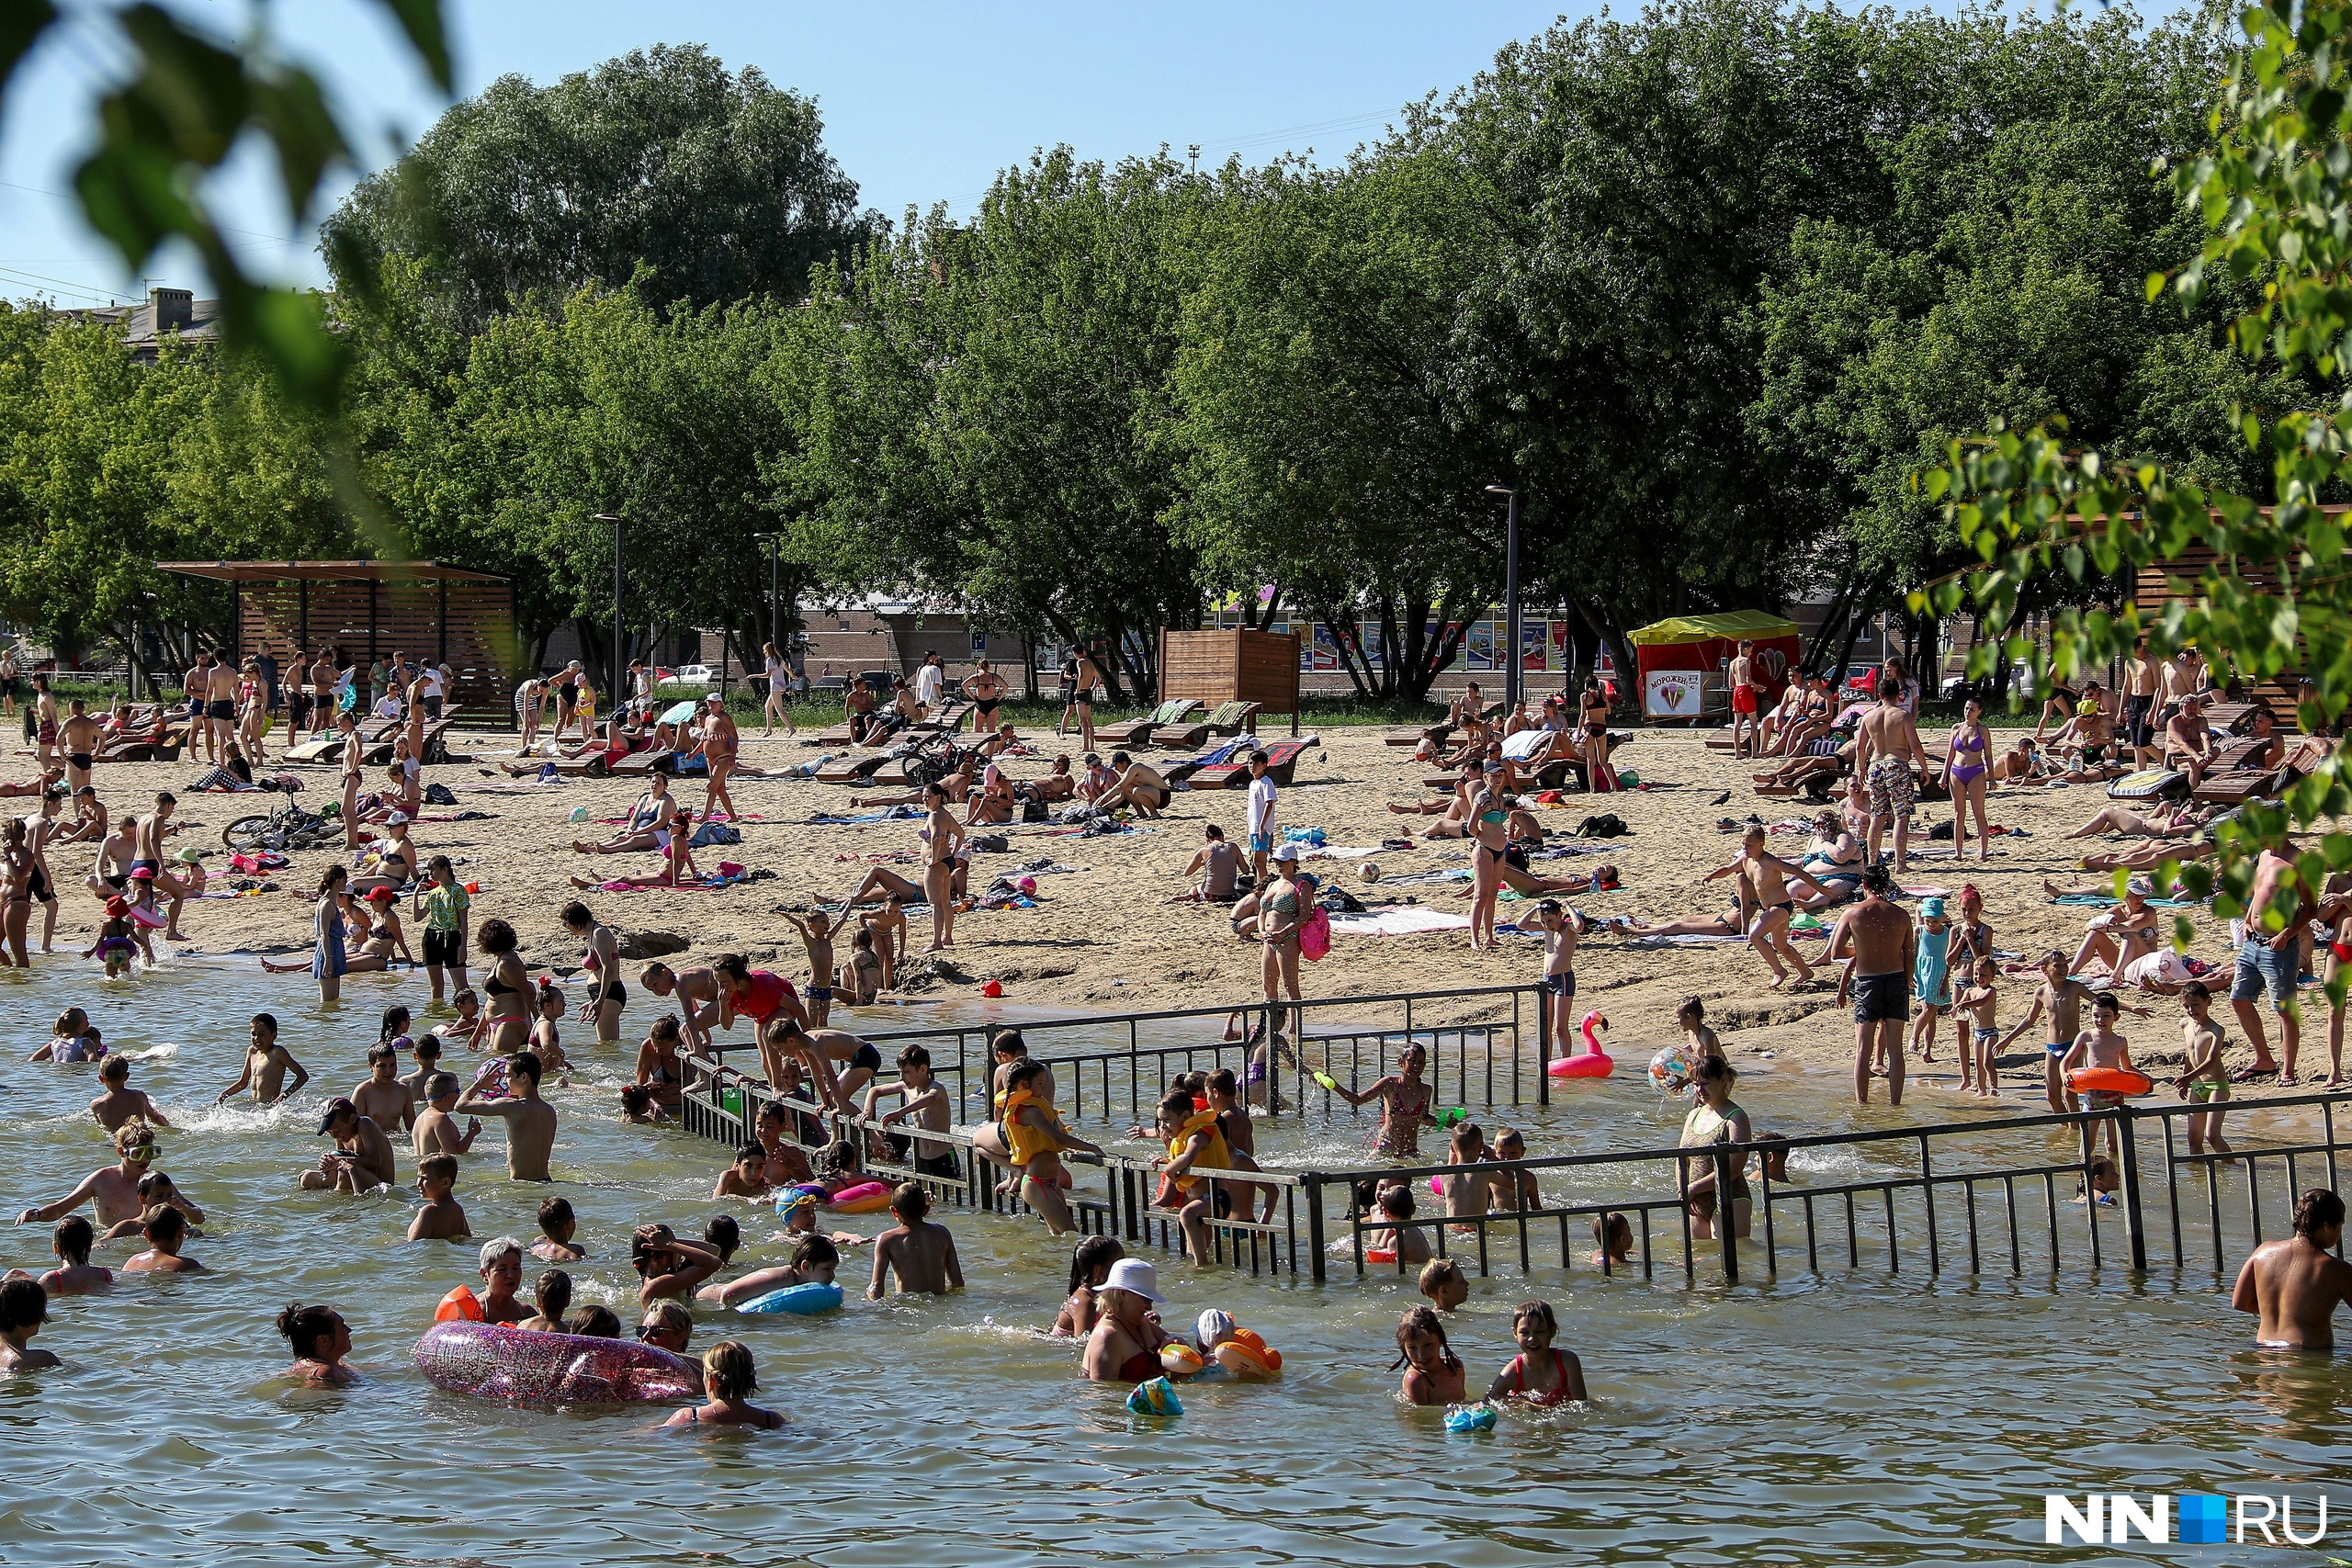 На пляже паркового озера есть специальный забор, загораживаюший зону купания для детей